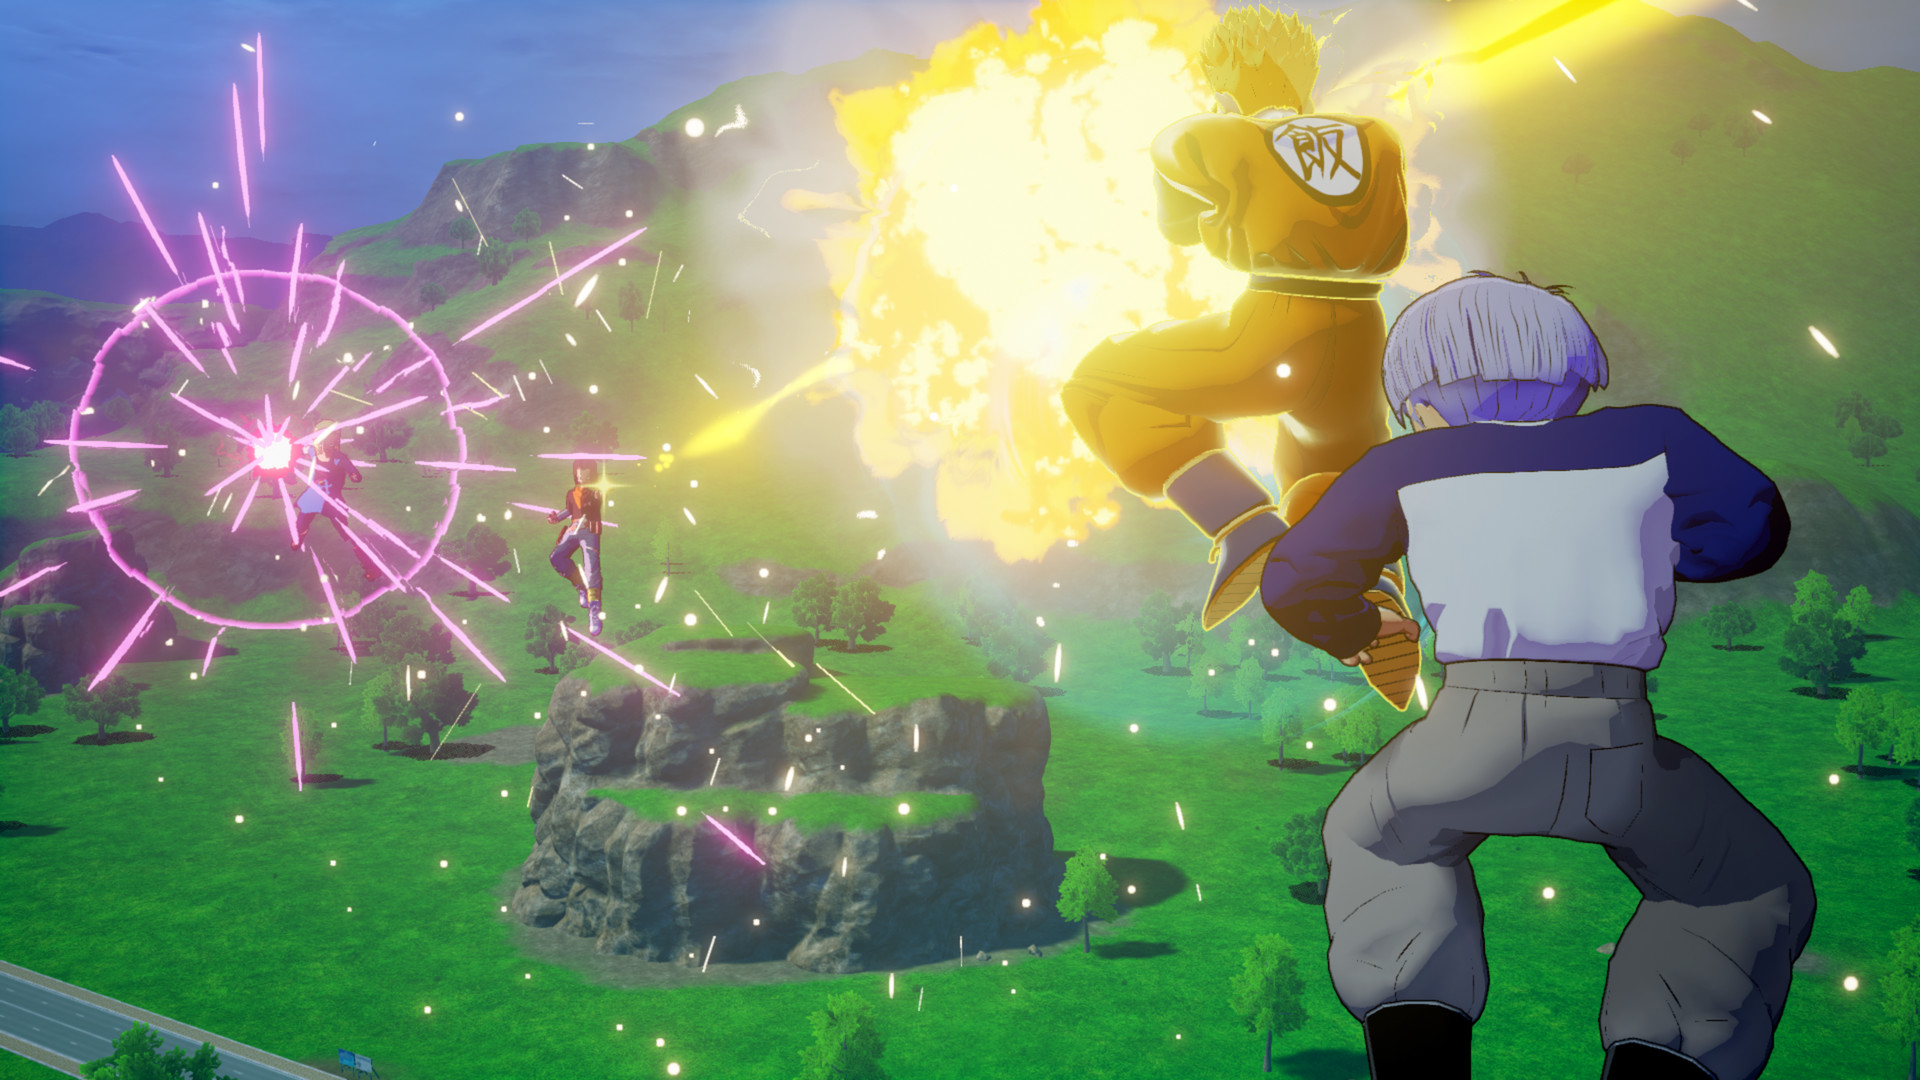 Dragon Ball Z Kakarot Trunks The Warrior Of Hope On Steam